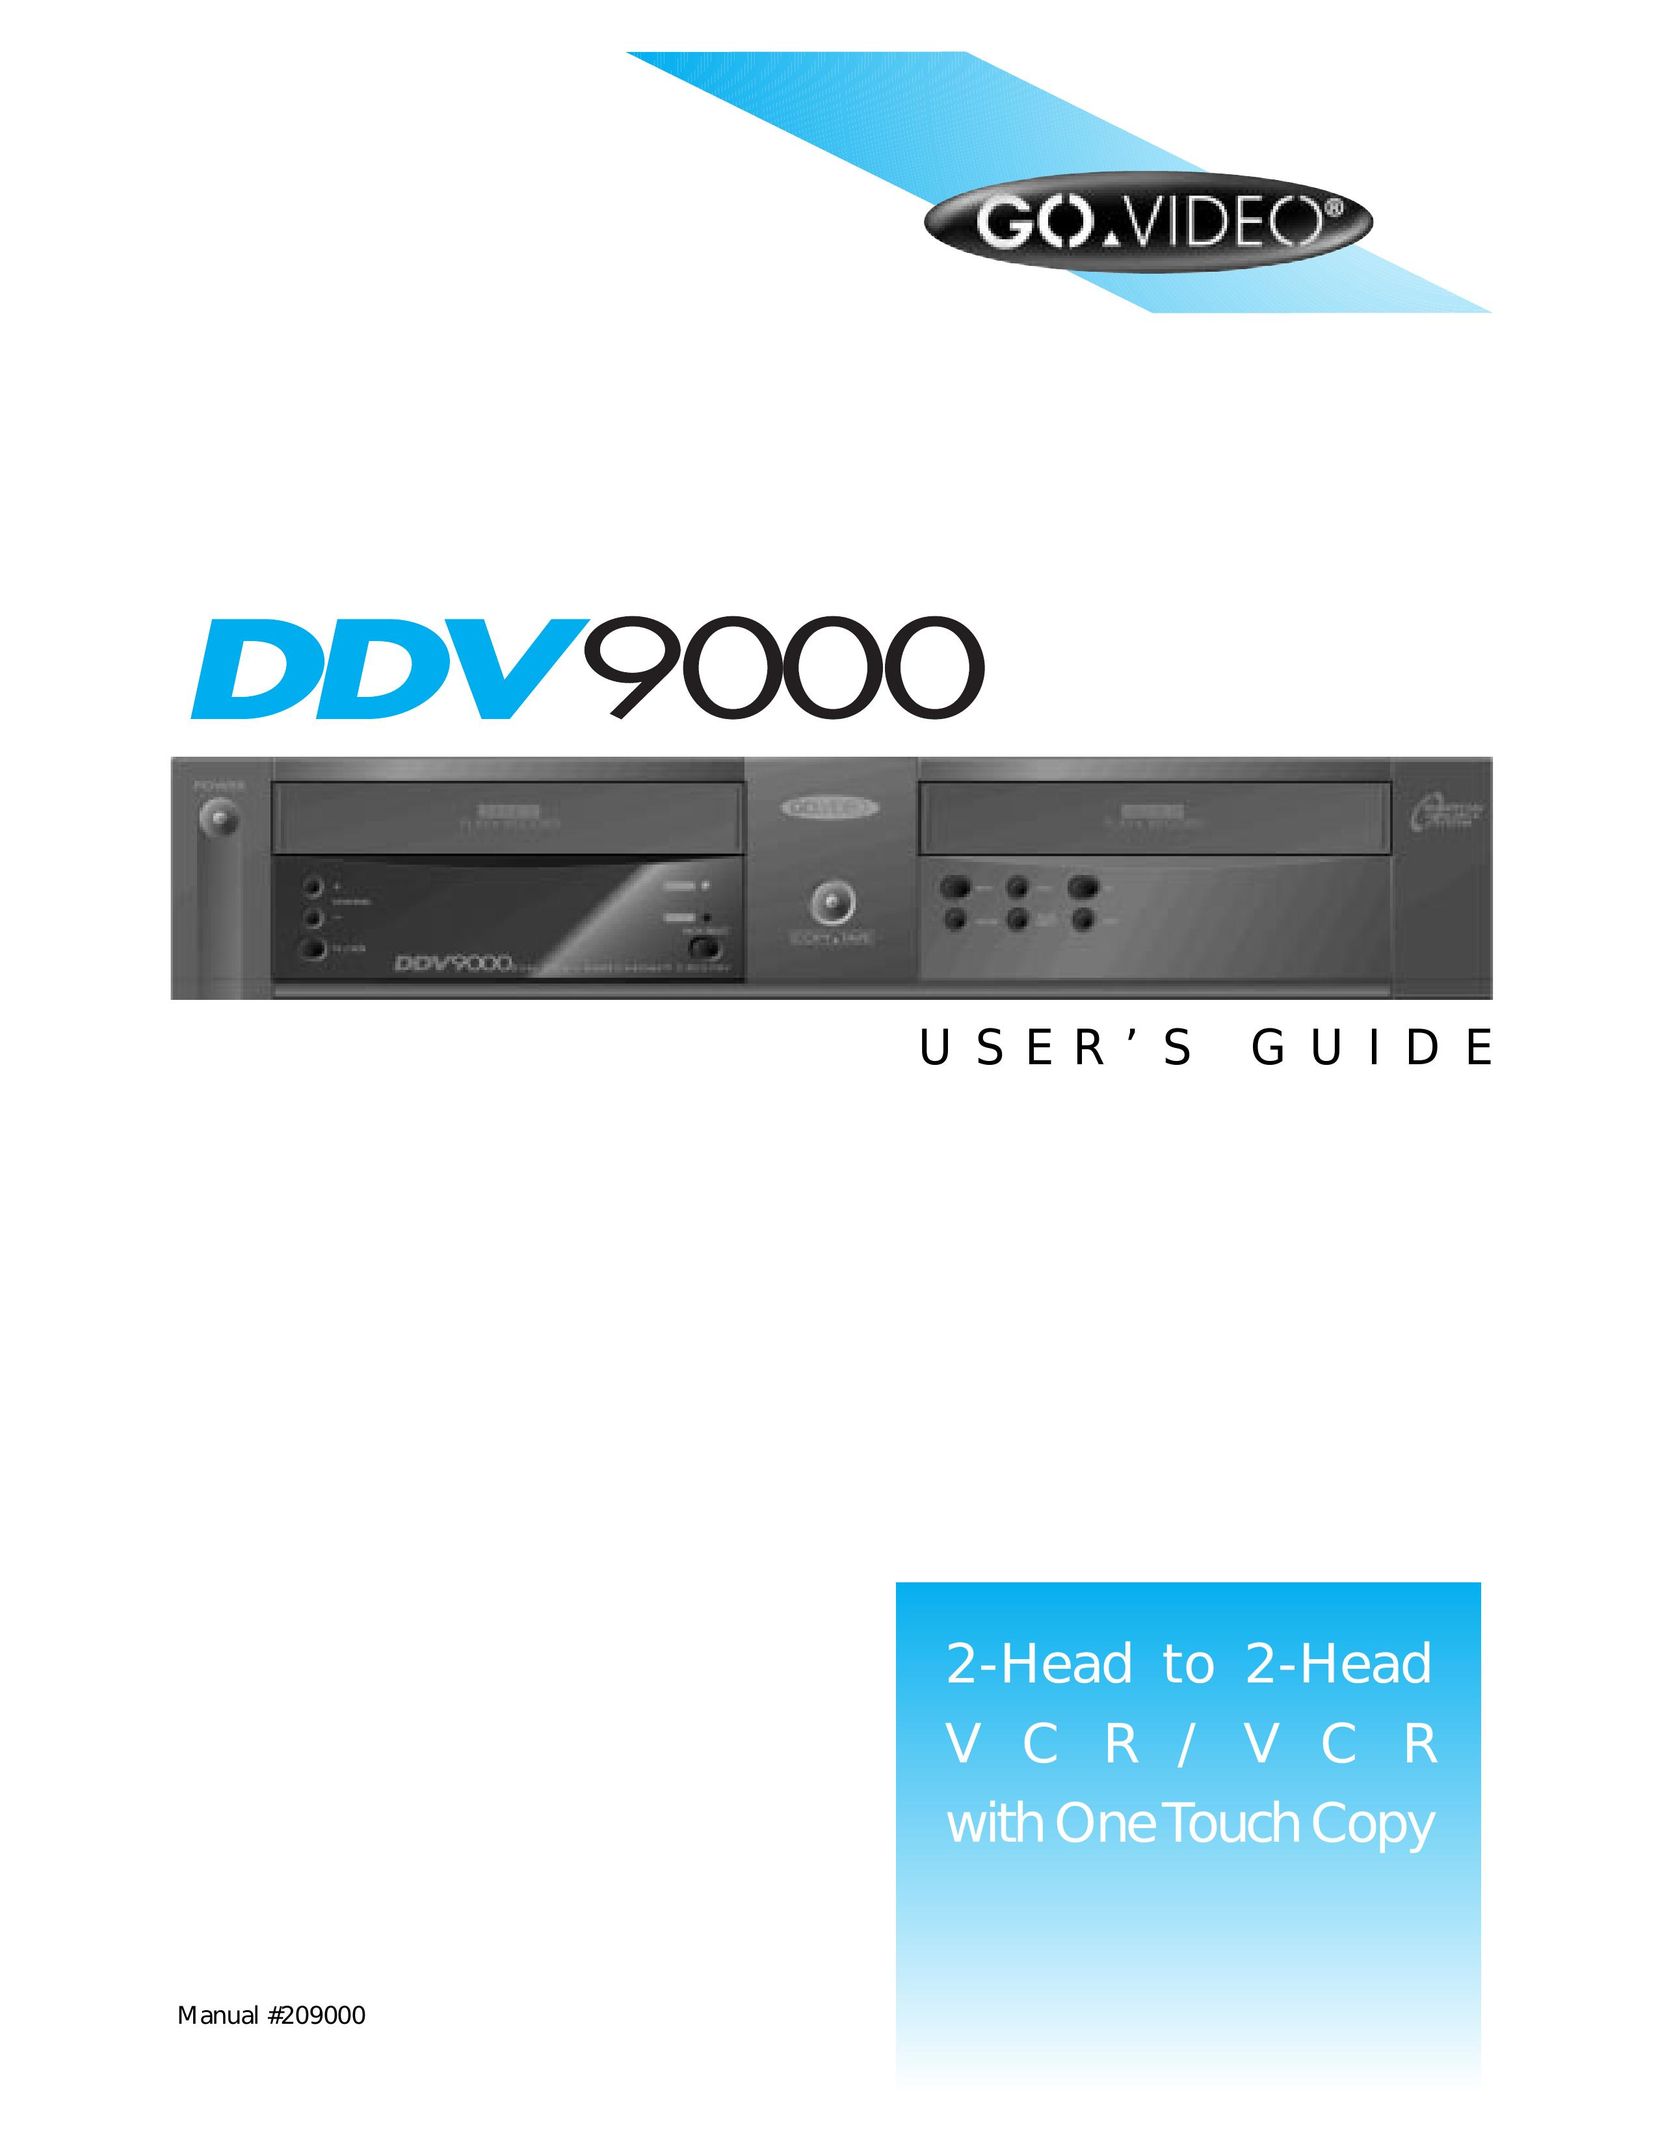 Go-Video DDV9000 VCR User Manual